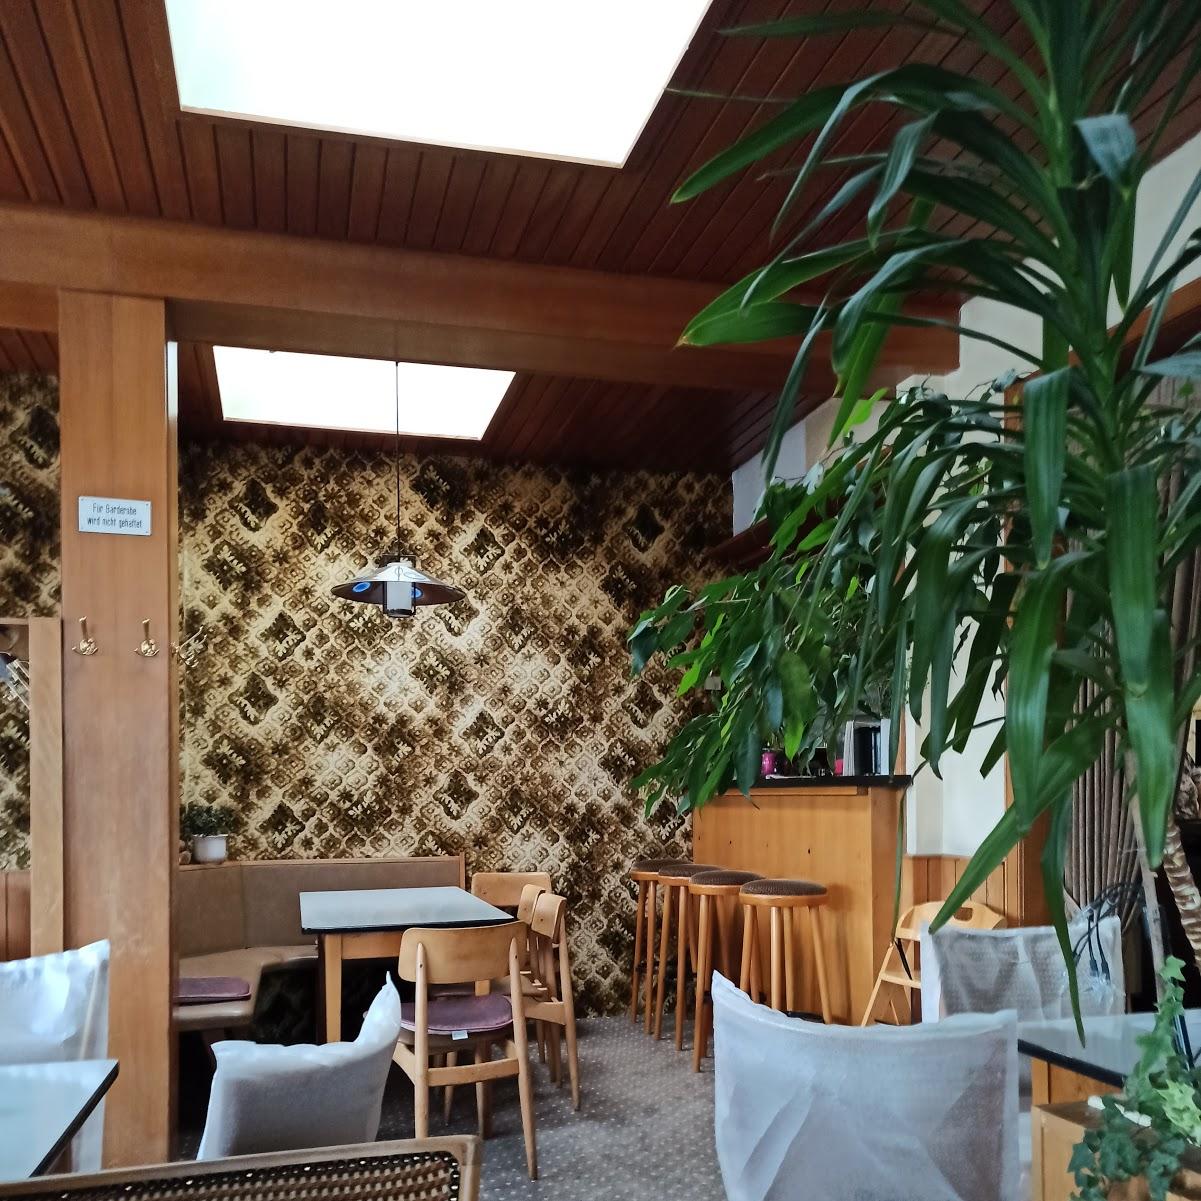 Restaurant "Terrassencafé Bauer" in  Schömberg